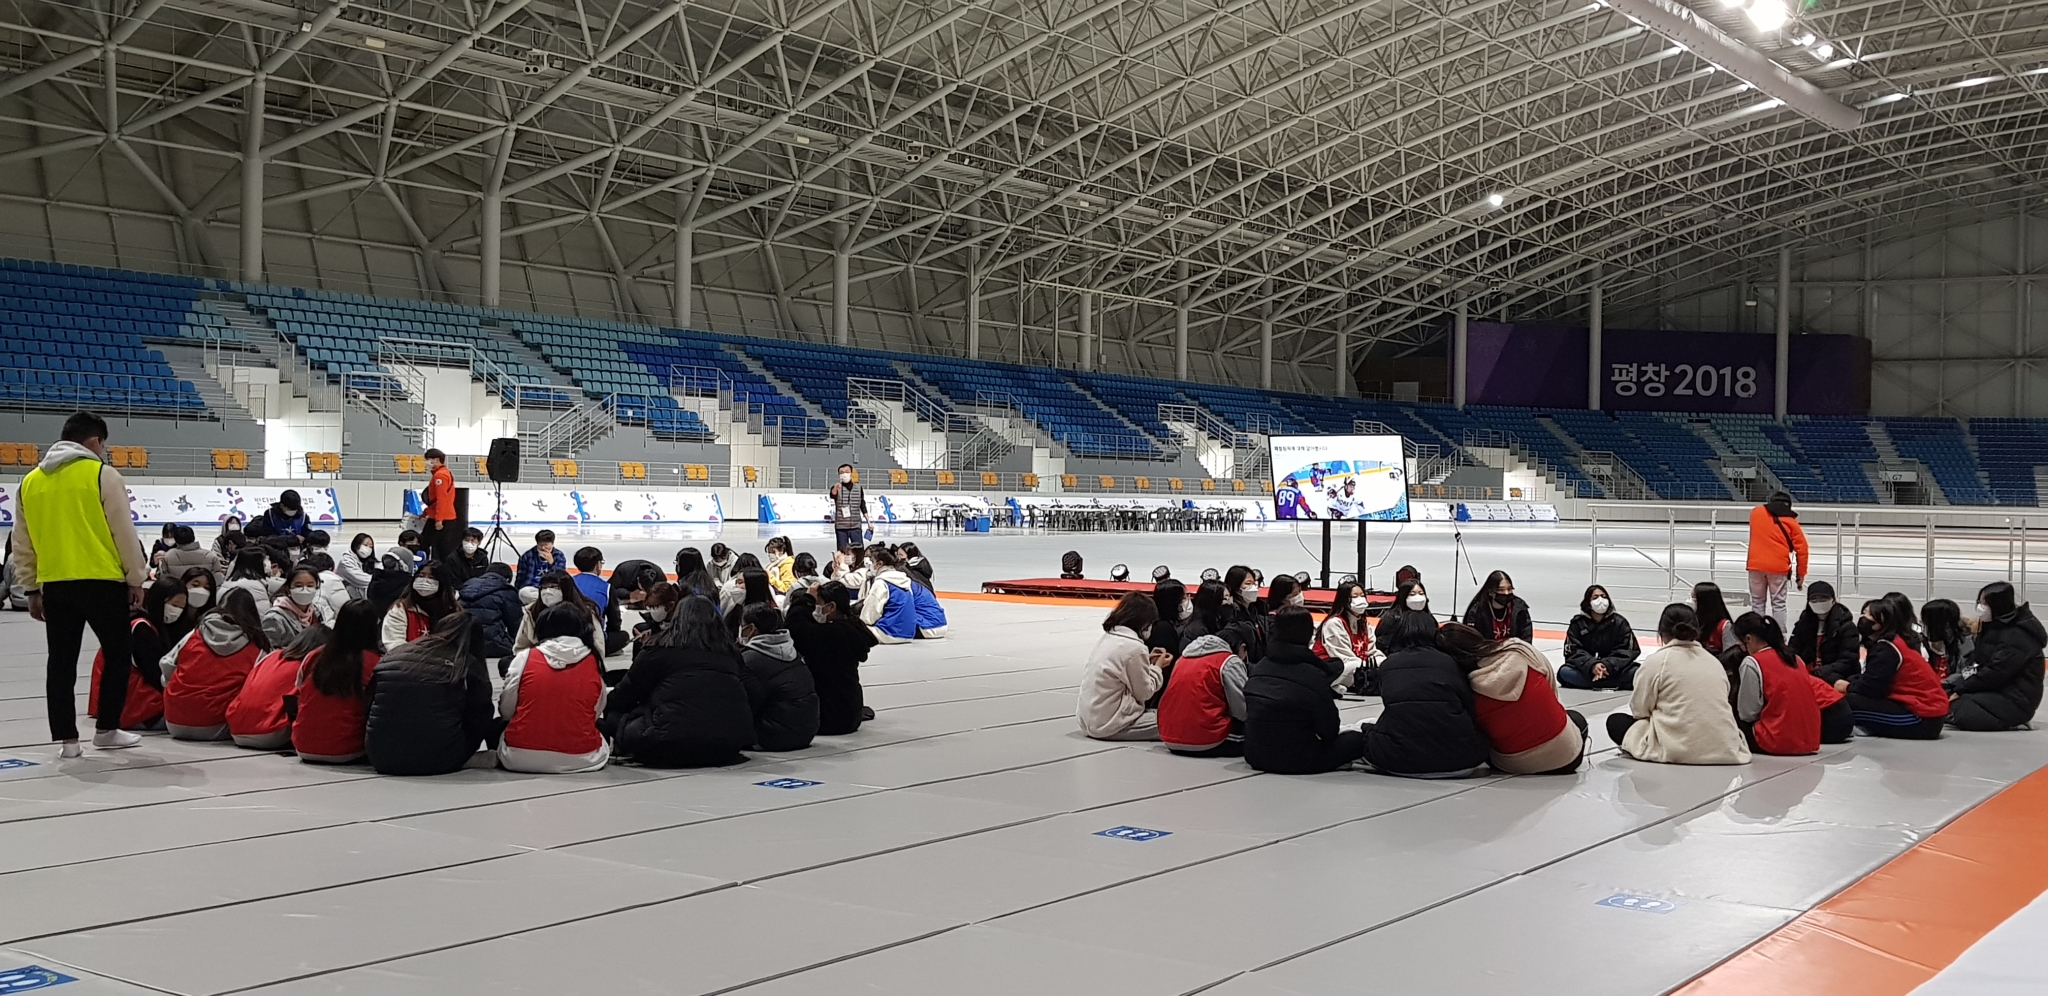 20211112 반다비캠프- 패럴림픽 퀴즈대회 및 퇴소식 (1)